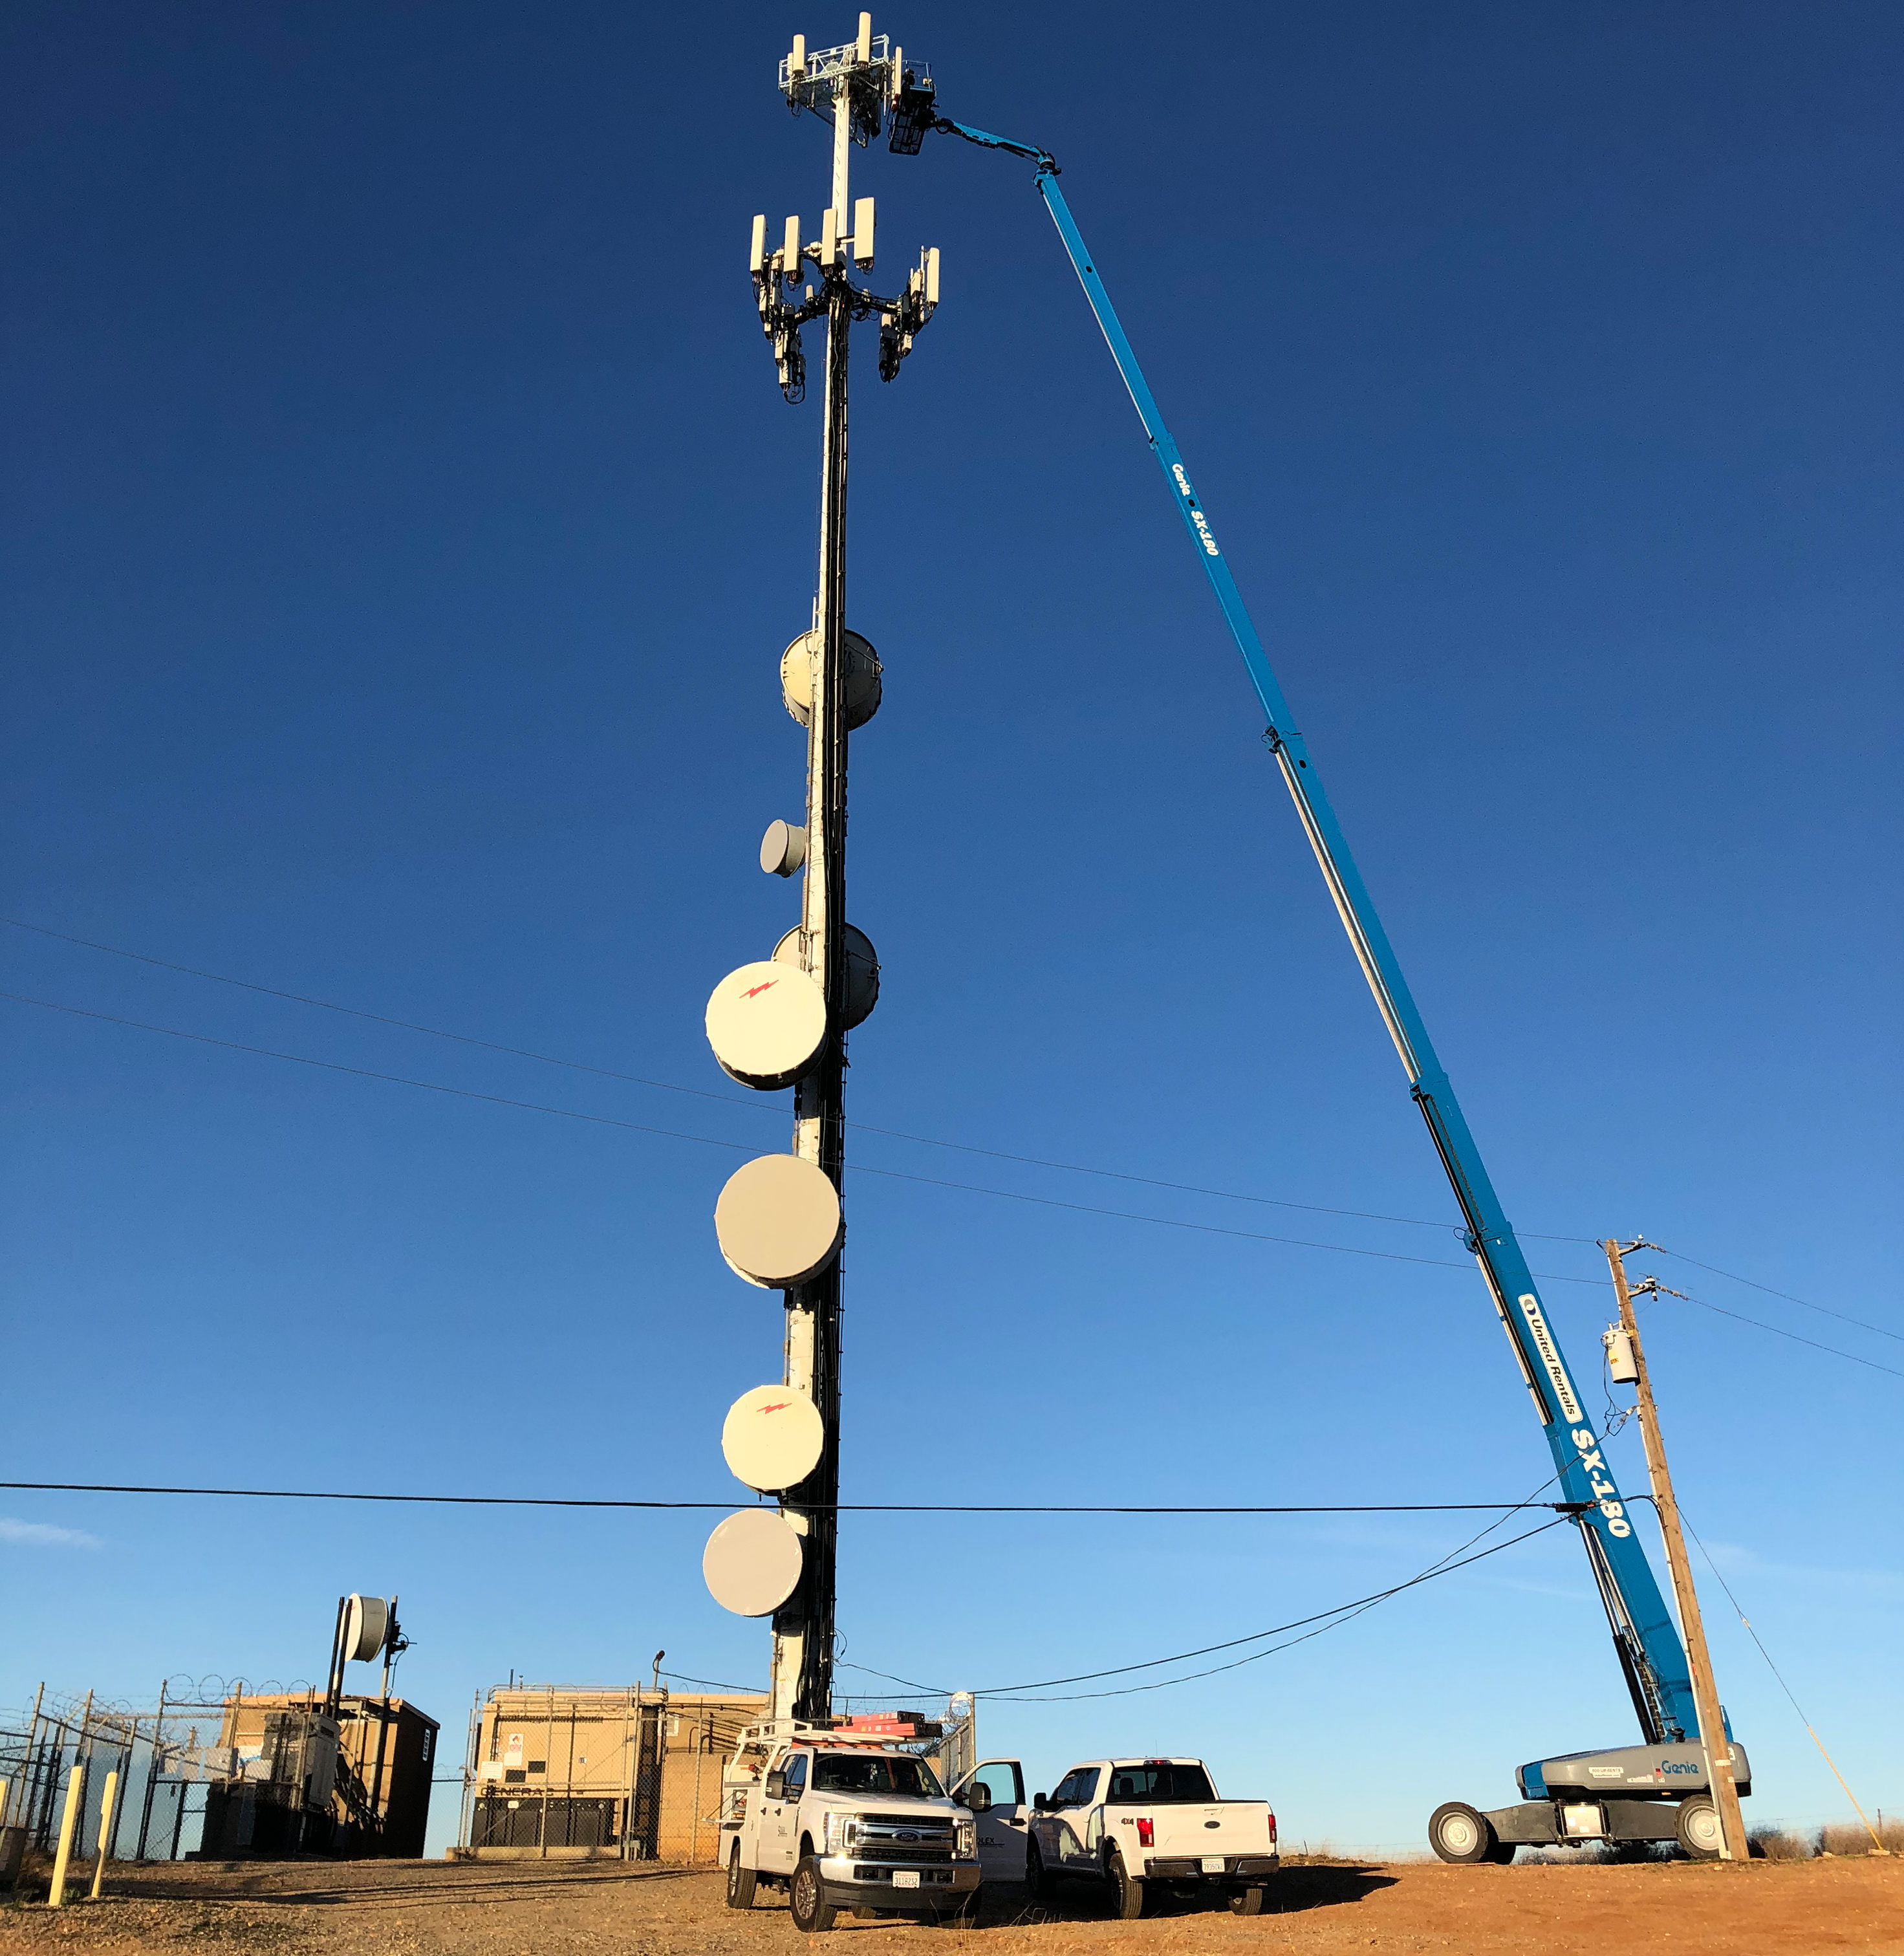 Building an Antenna In the Desert